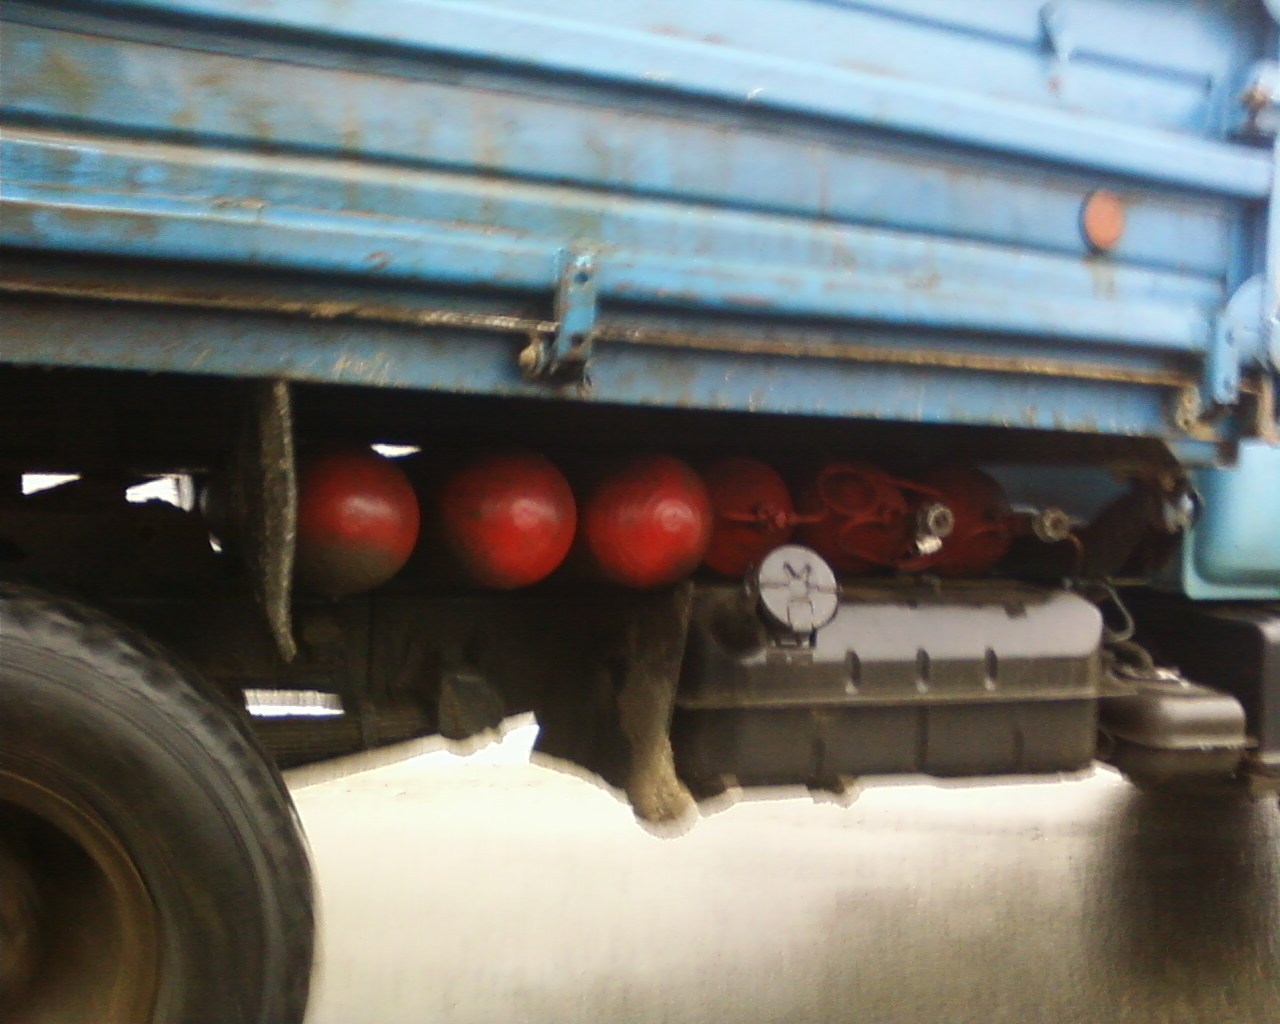 Метановая связка газовых баллонов, установленный на грузовом автомобиле